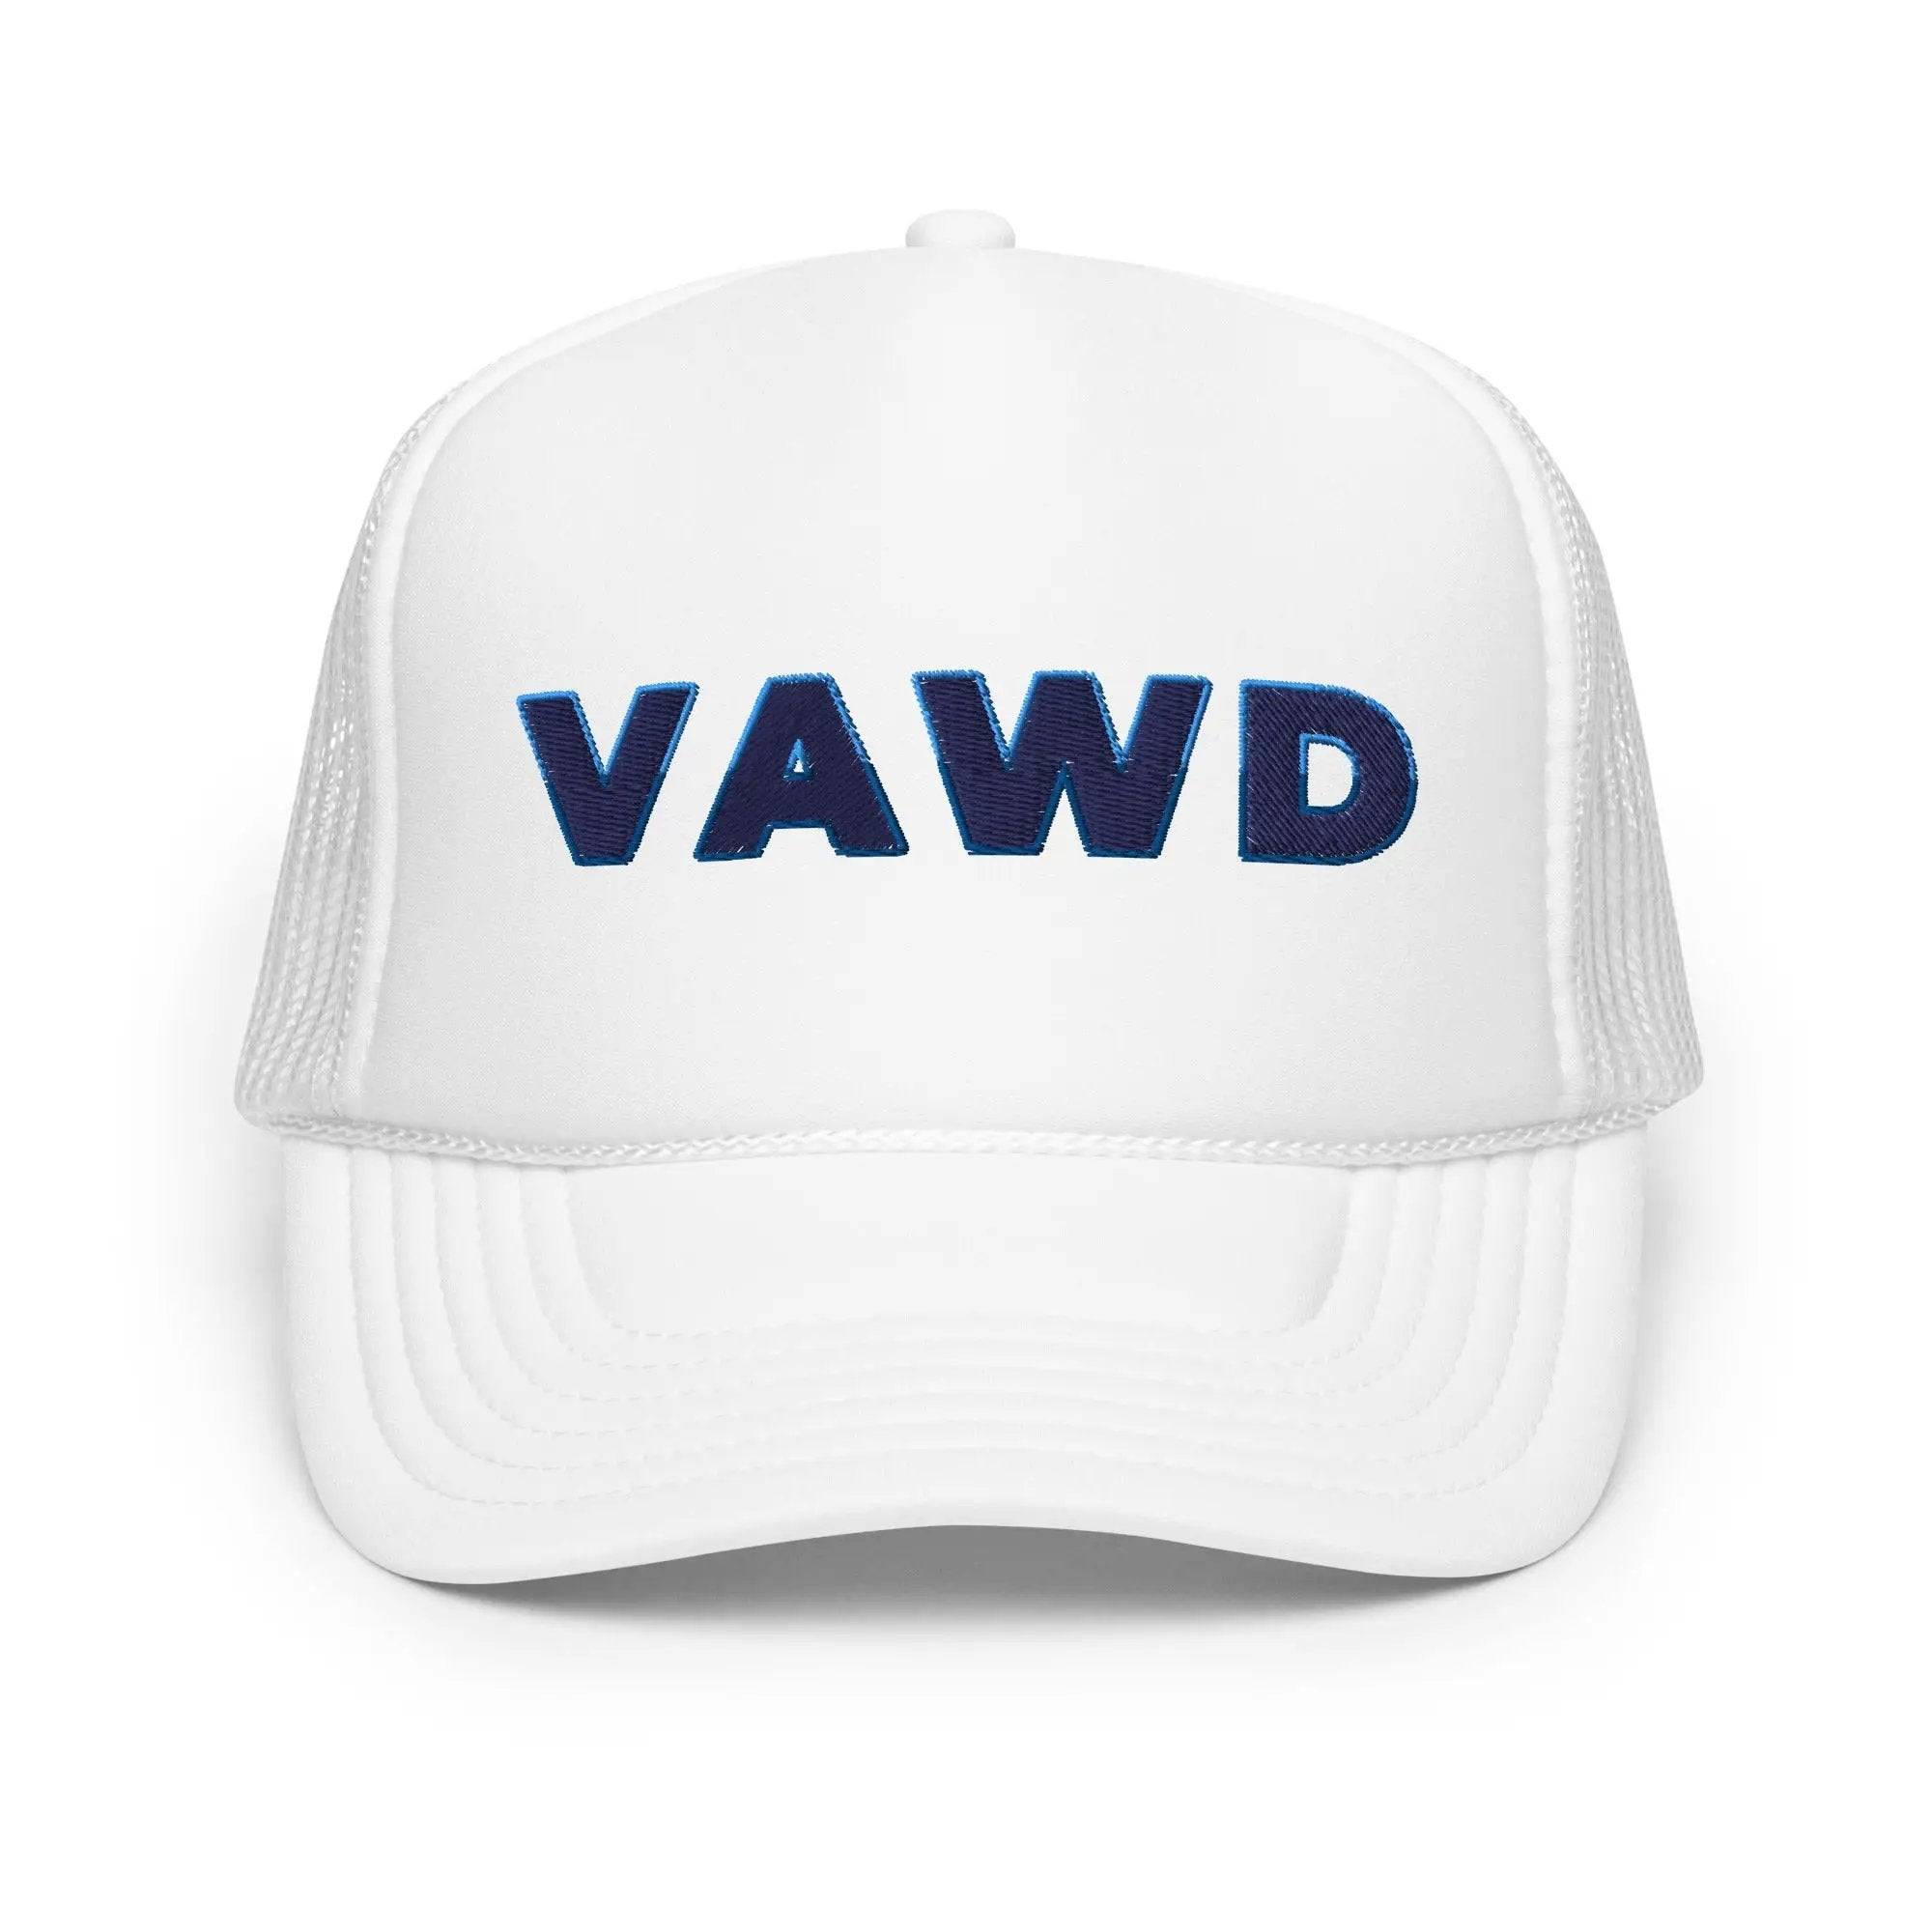 Trucker Hat with VAWD written on it